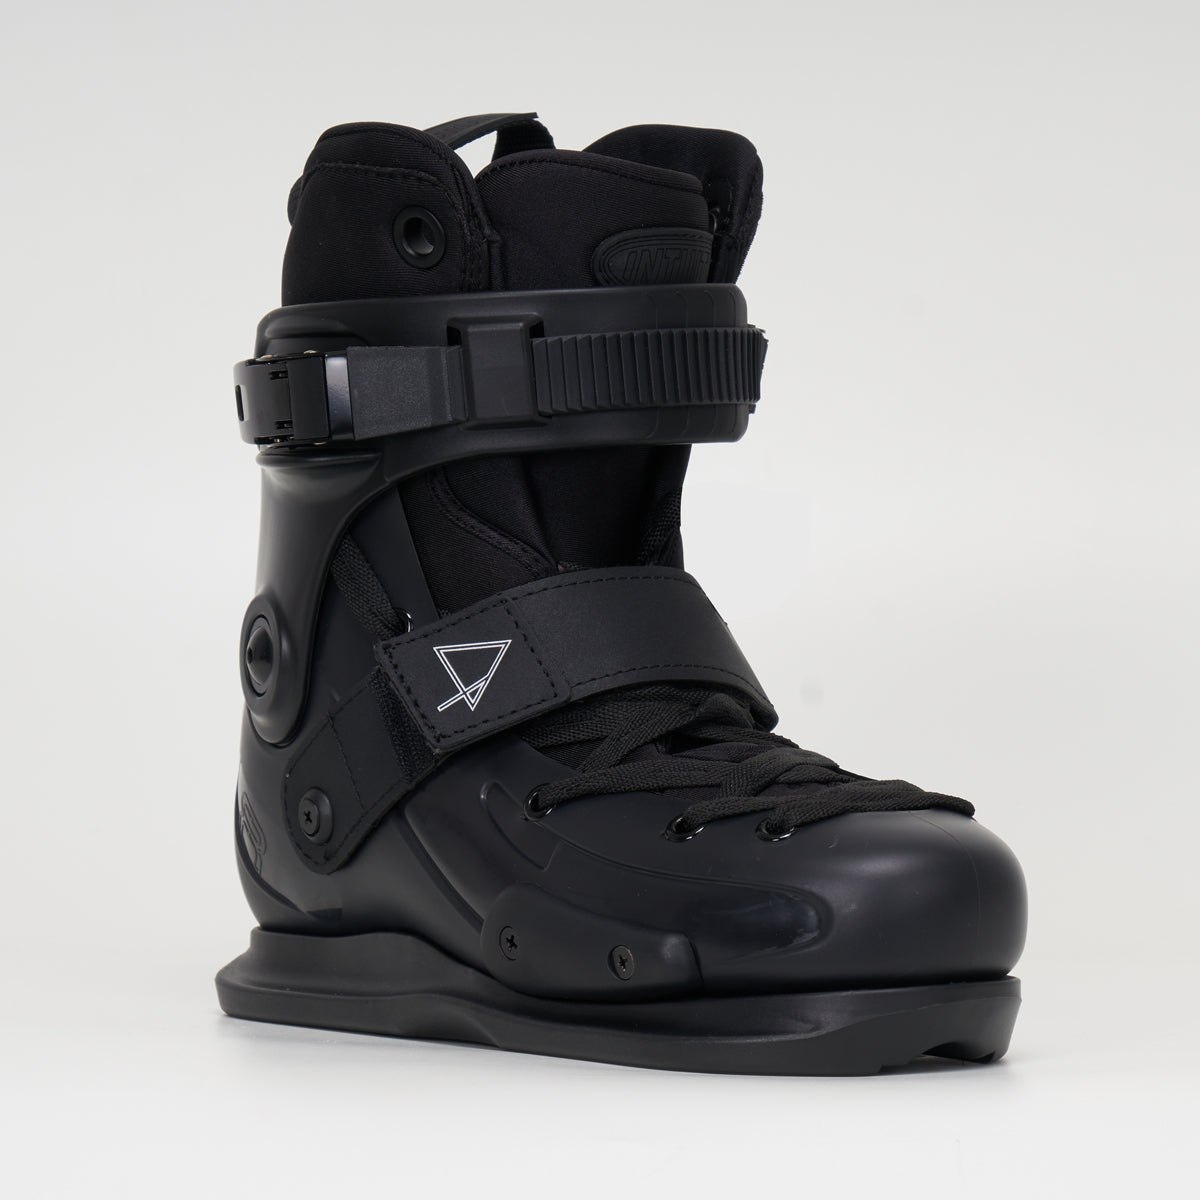 FR Skates UFR Pottier Boot-Only Black Skates - Intuition Liner